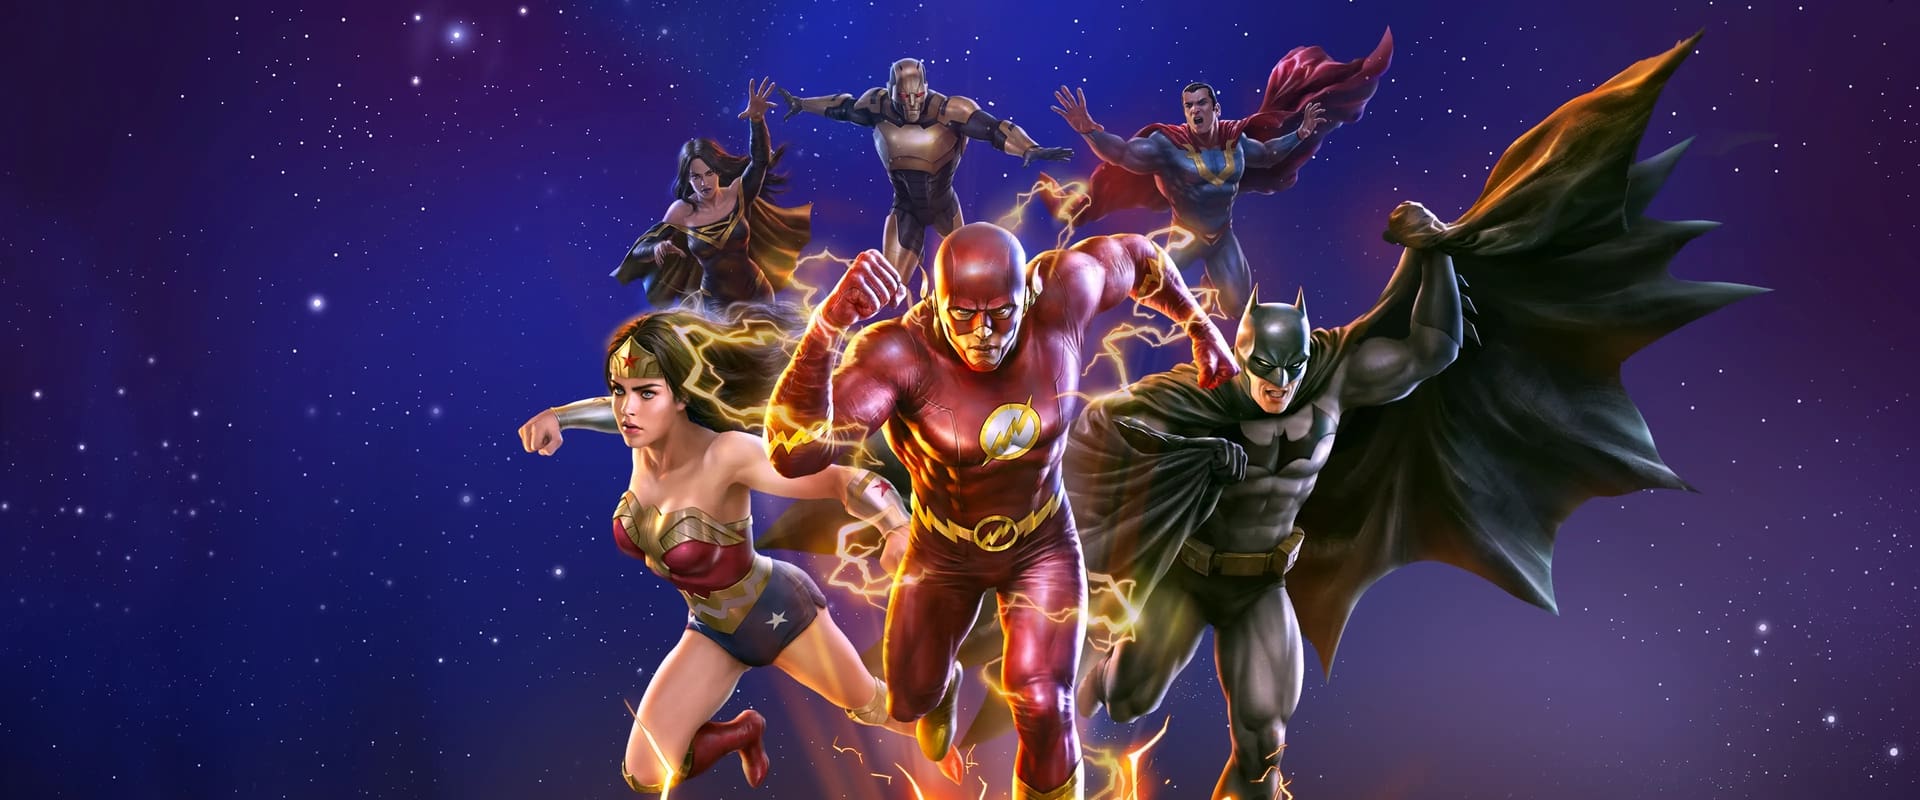 Justice League : Crisis on Infinite Earths Partie 1